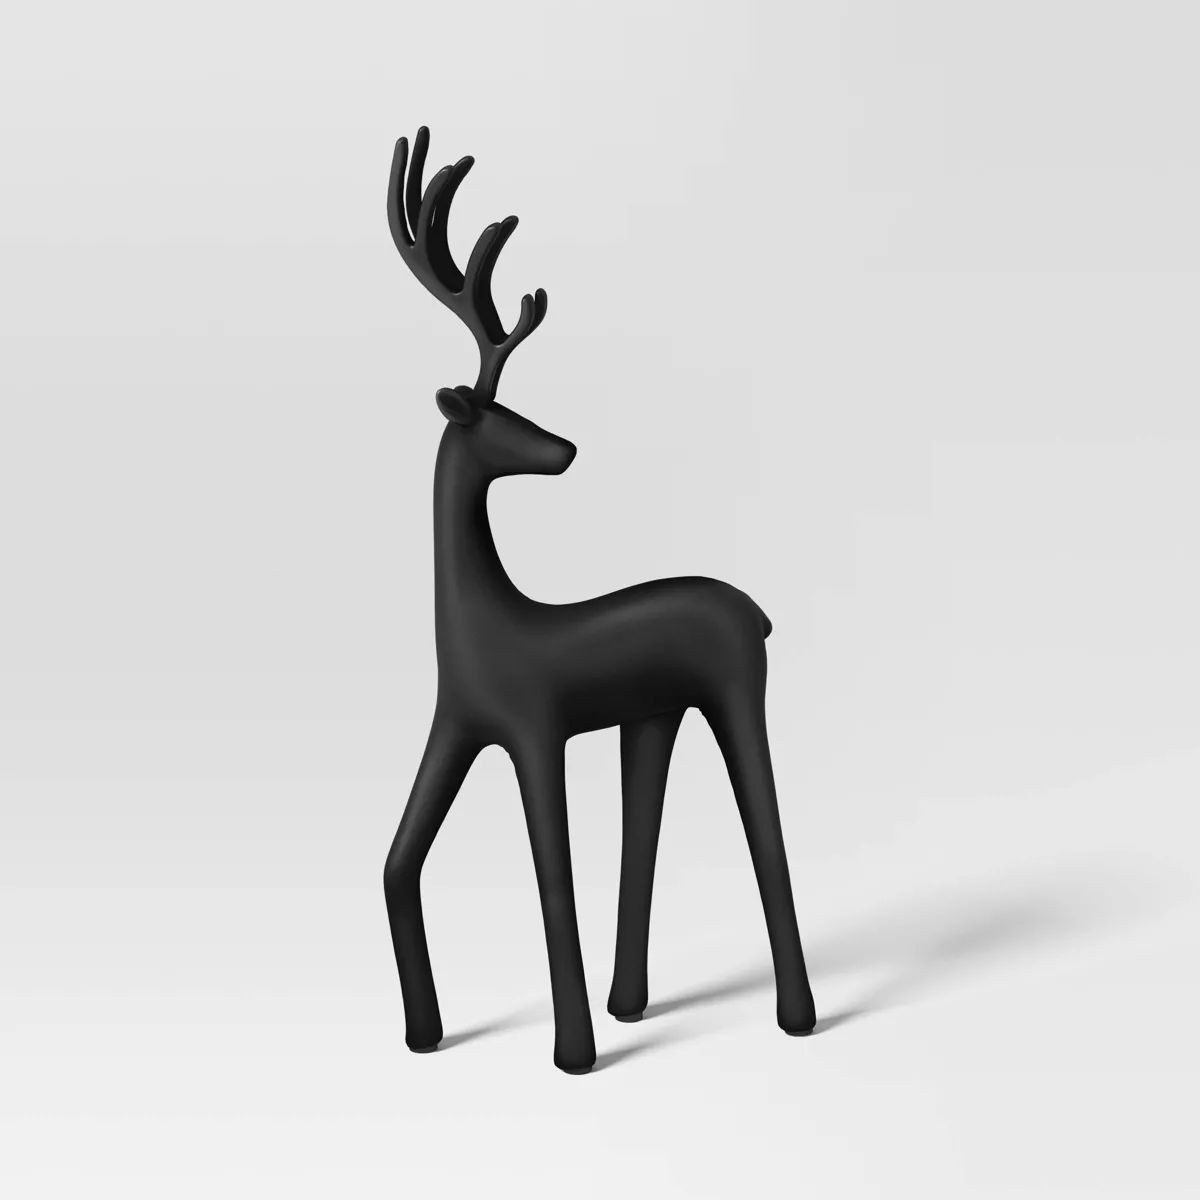 14" Deer Looking Backwards Animal Christmas Statue - Wondershop™ Black | Target